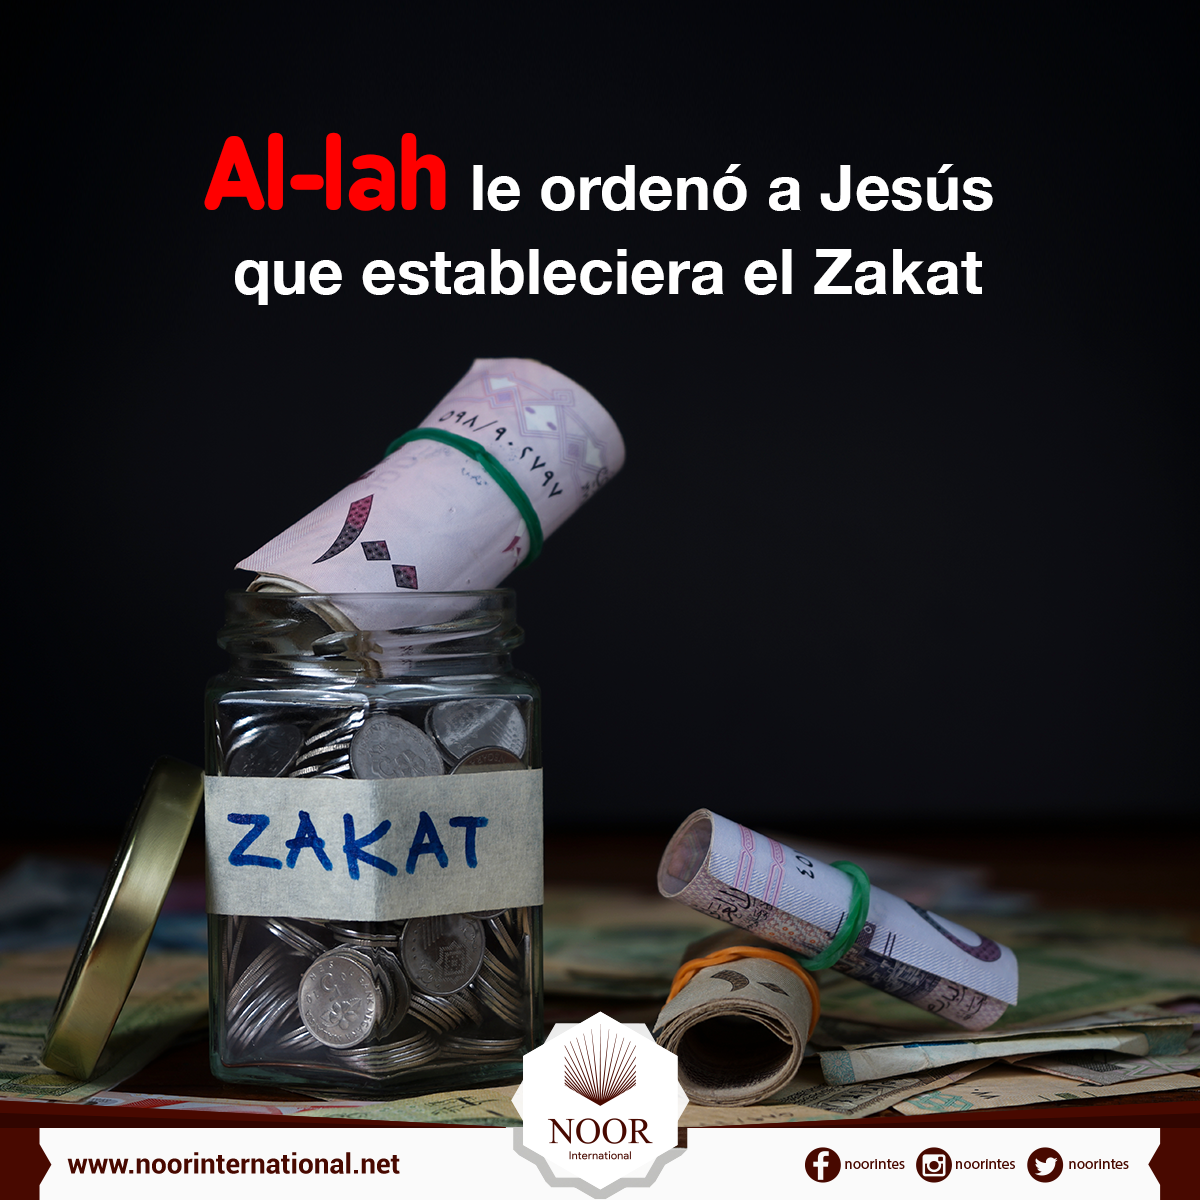 Al-lah le ordenó a Jesús que estableciera el Zakat